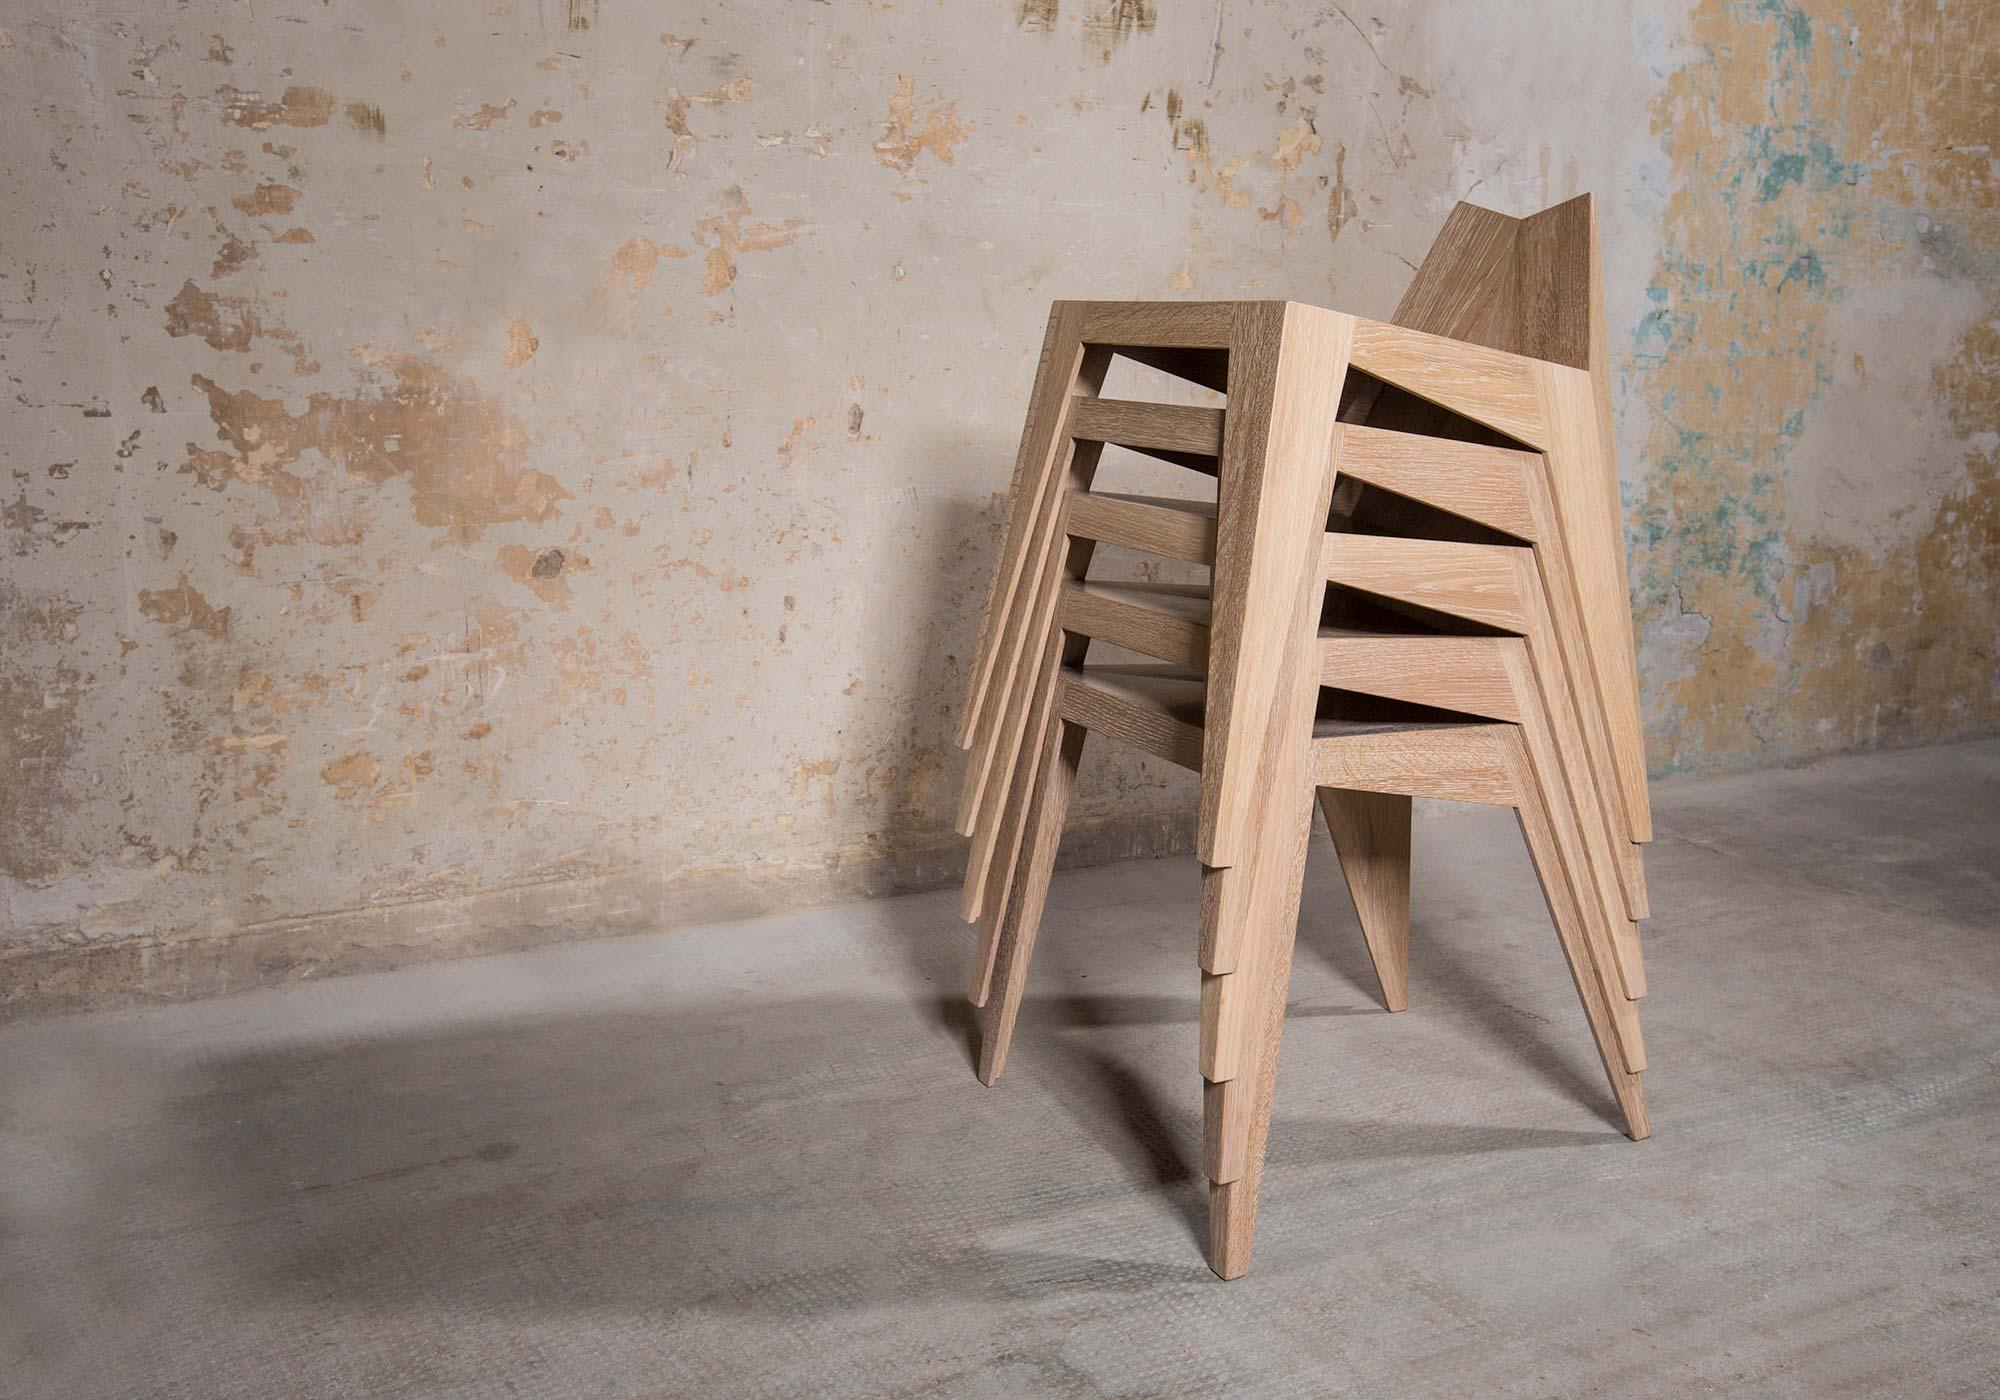 Stocker Chair Stool by Matthias Scherzinger 1